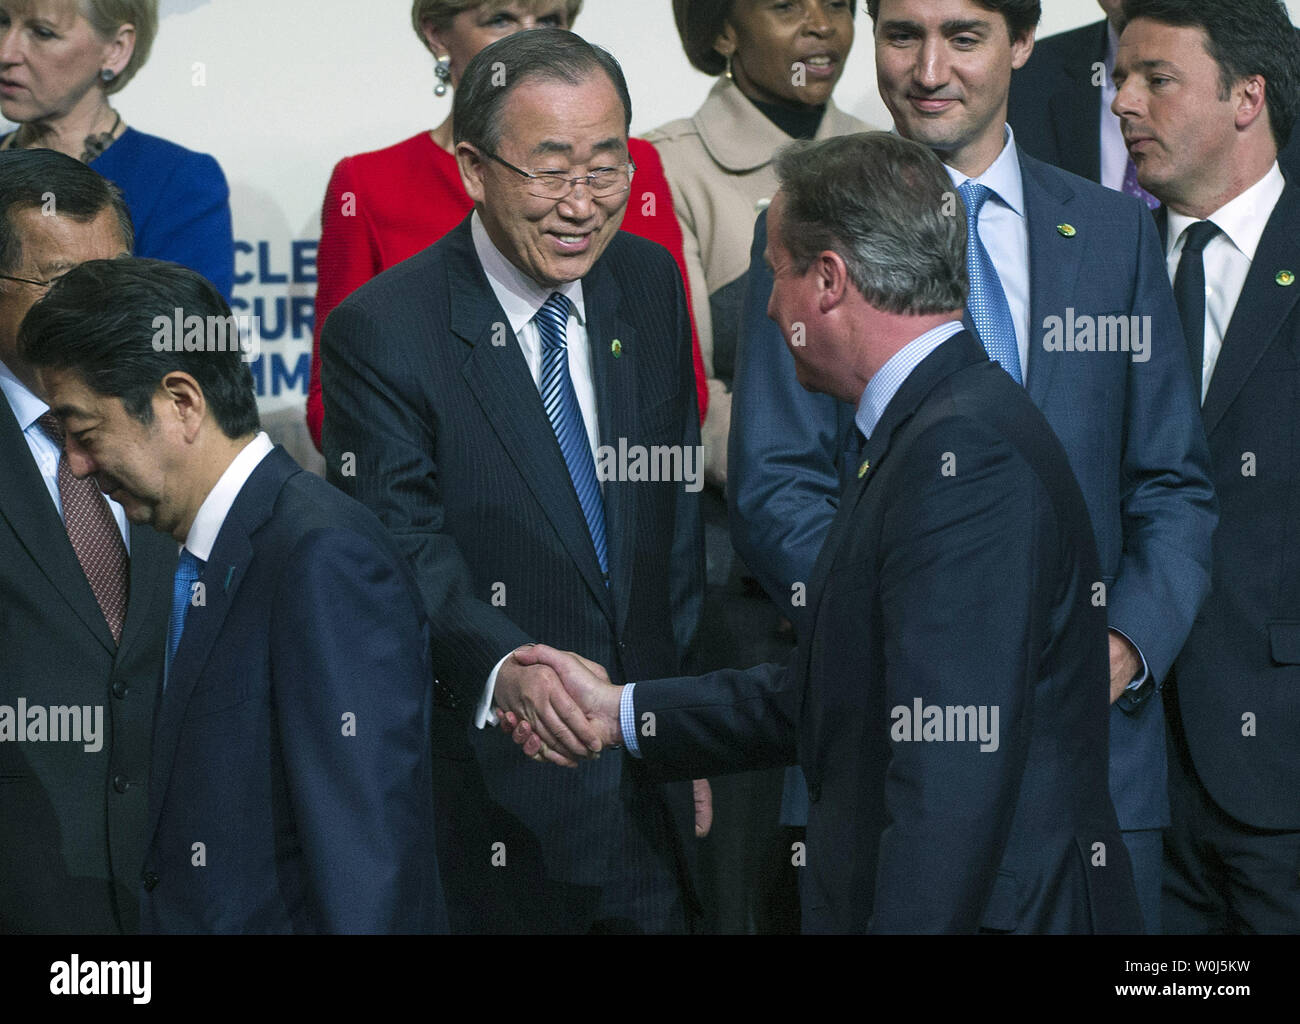 David Cameron (R), Premier Ministre du Royaume-Uni, serre la main du Secrétaire général de l'ONU, Ban Ki-moon, lors de la photo de famille à la 2016 Sommet sur la sécurité nucléaire à Washington, D.C. le 1 avril 2016. Le Sommet réunit les dirigeants du monde entier pour aider à apporter des améliorations à la sécurité des matières nucléaires dans le monde entier. Photo par Kevin Dietsch/UPI Banque D'Images